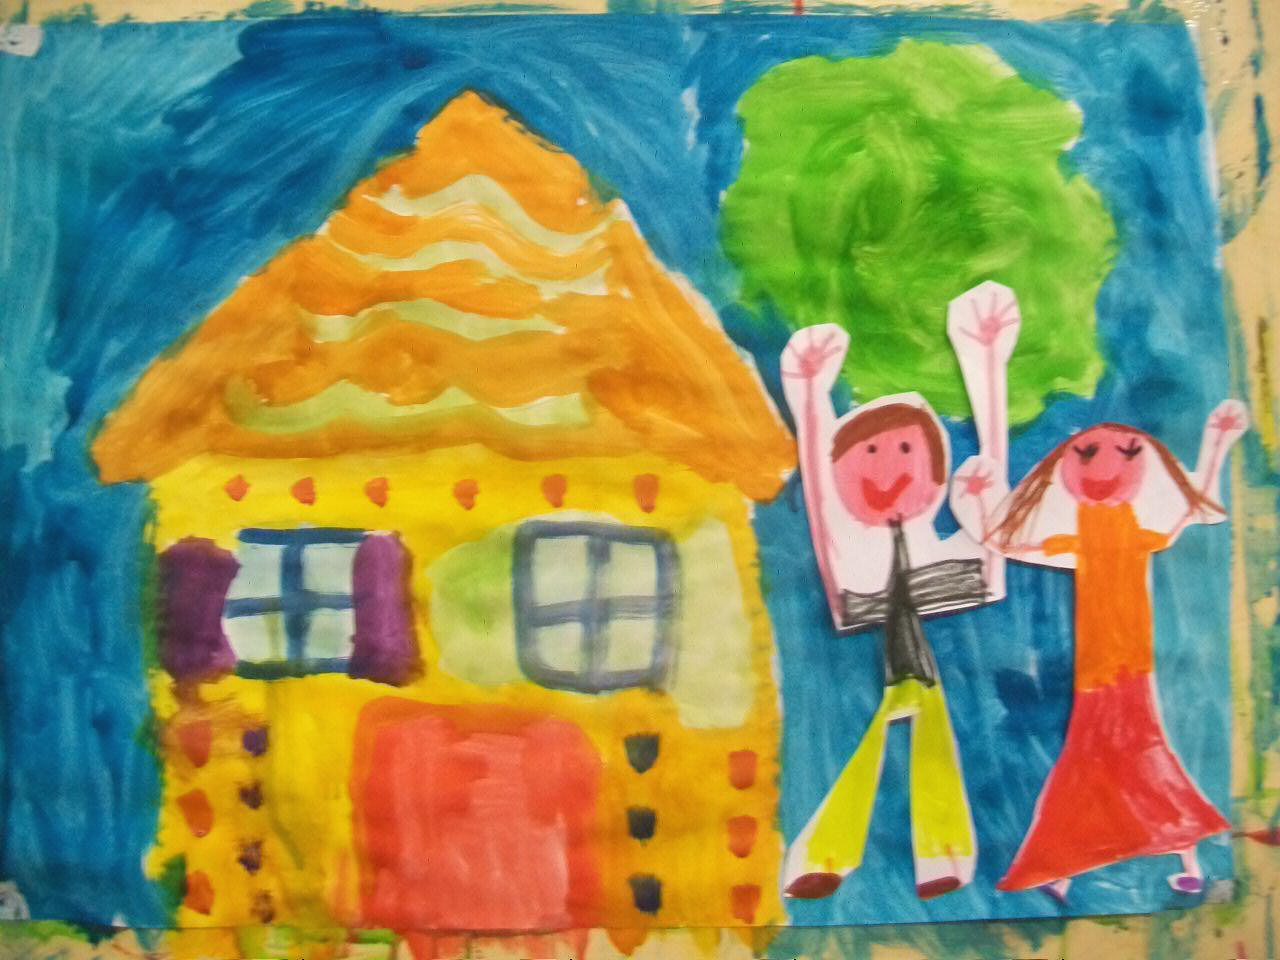 pittura in sequenza della storia di Hansel e Gretel realizzata da gruppi di bambini